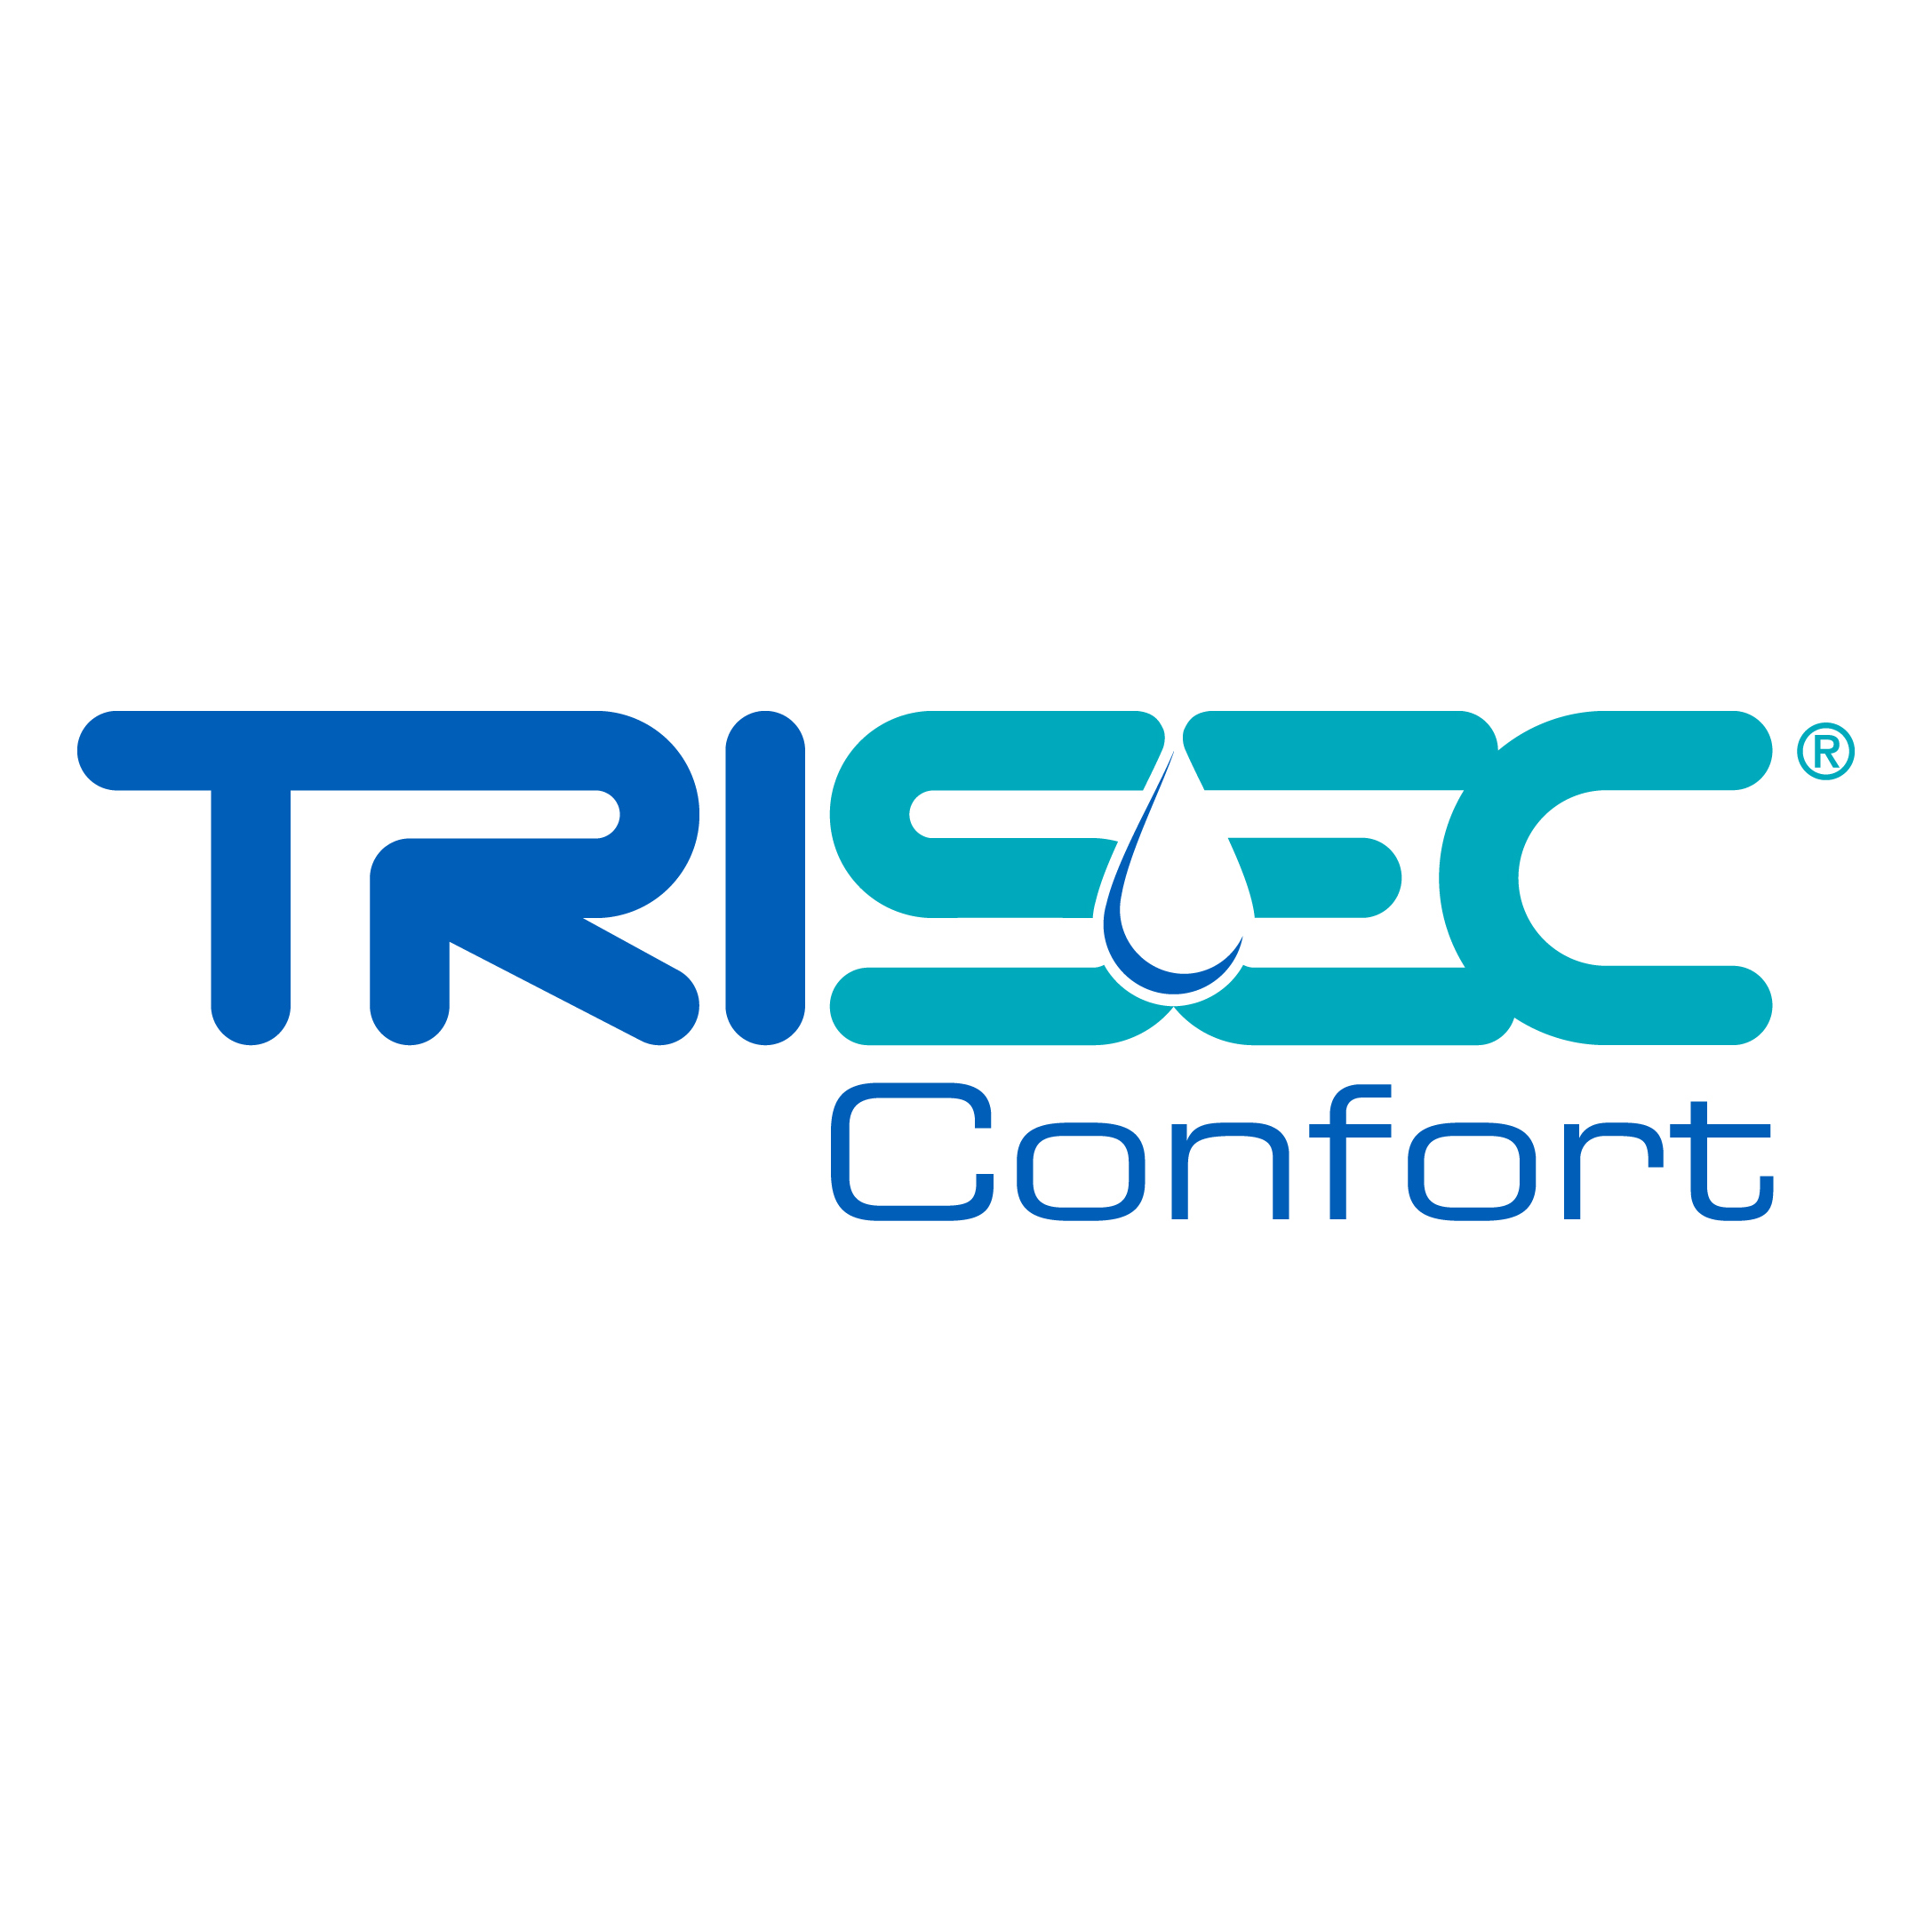 Diseño de Identidad Visual y Logotipo para la marca Trisec